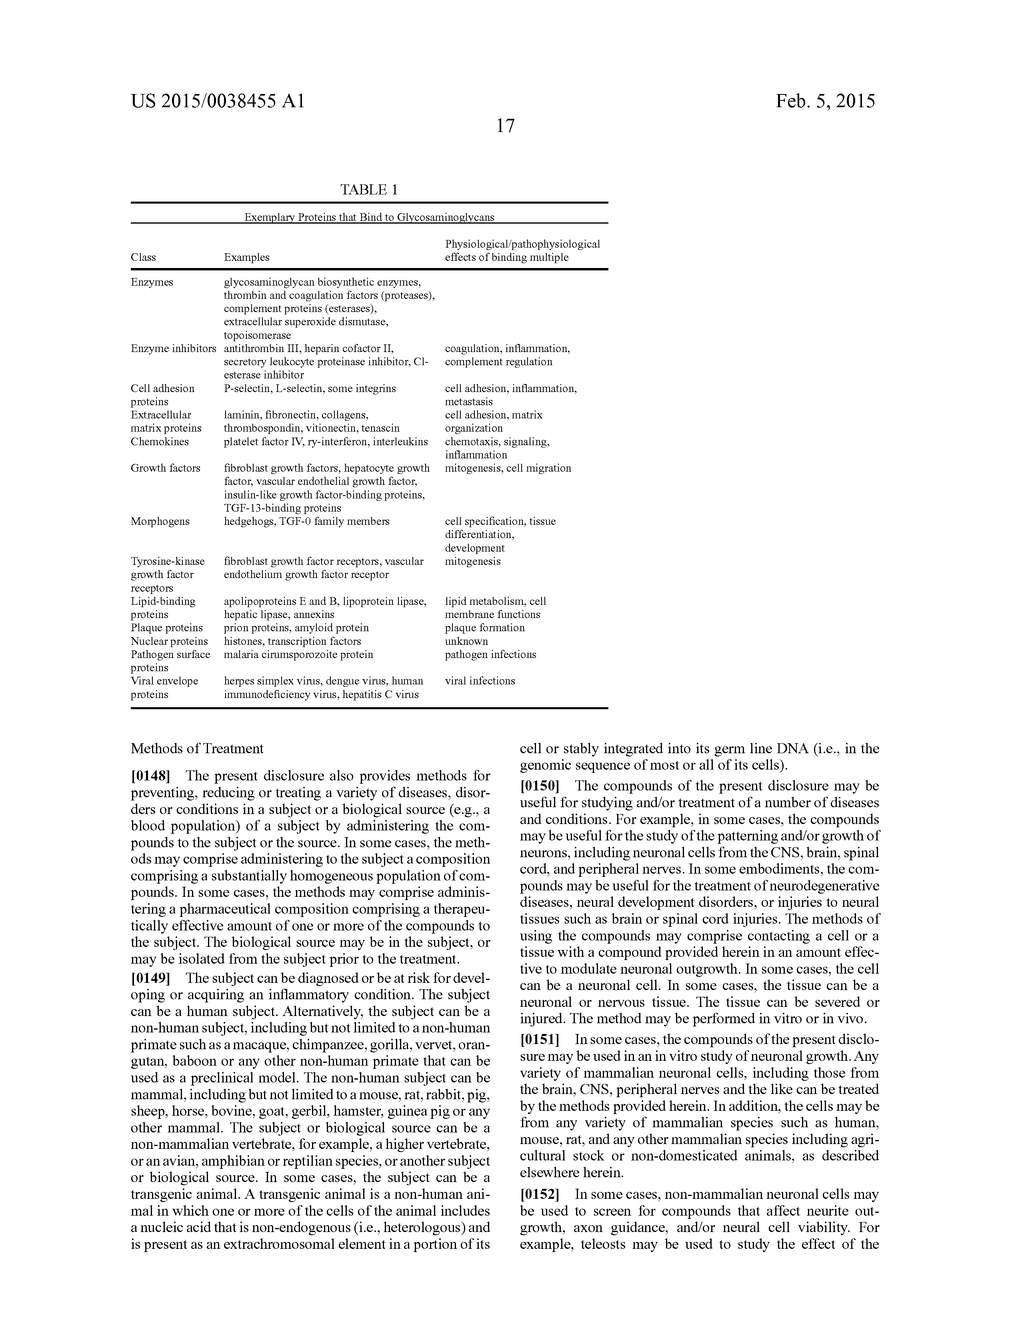 HEPARAN SULFATE/HEPARIN MIMETICS WITH ANTI-CHEMOKINE AND ANTI-INFLAMMATORY     ACTIVITY - diagram, schematic, and image 32